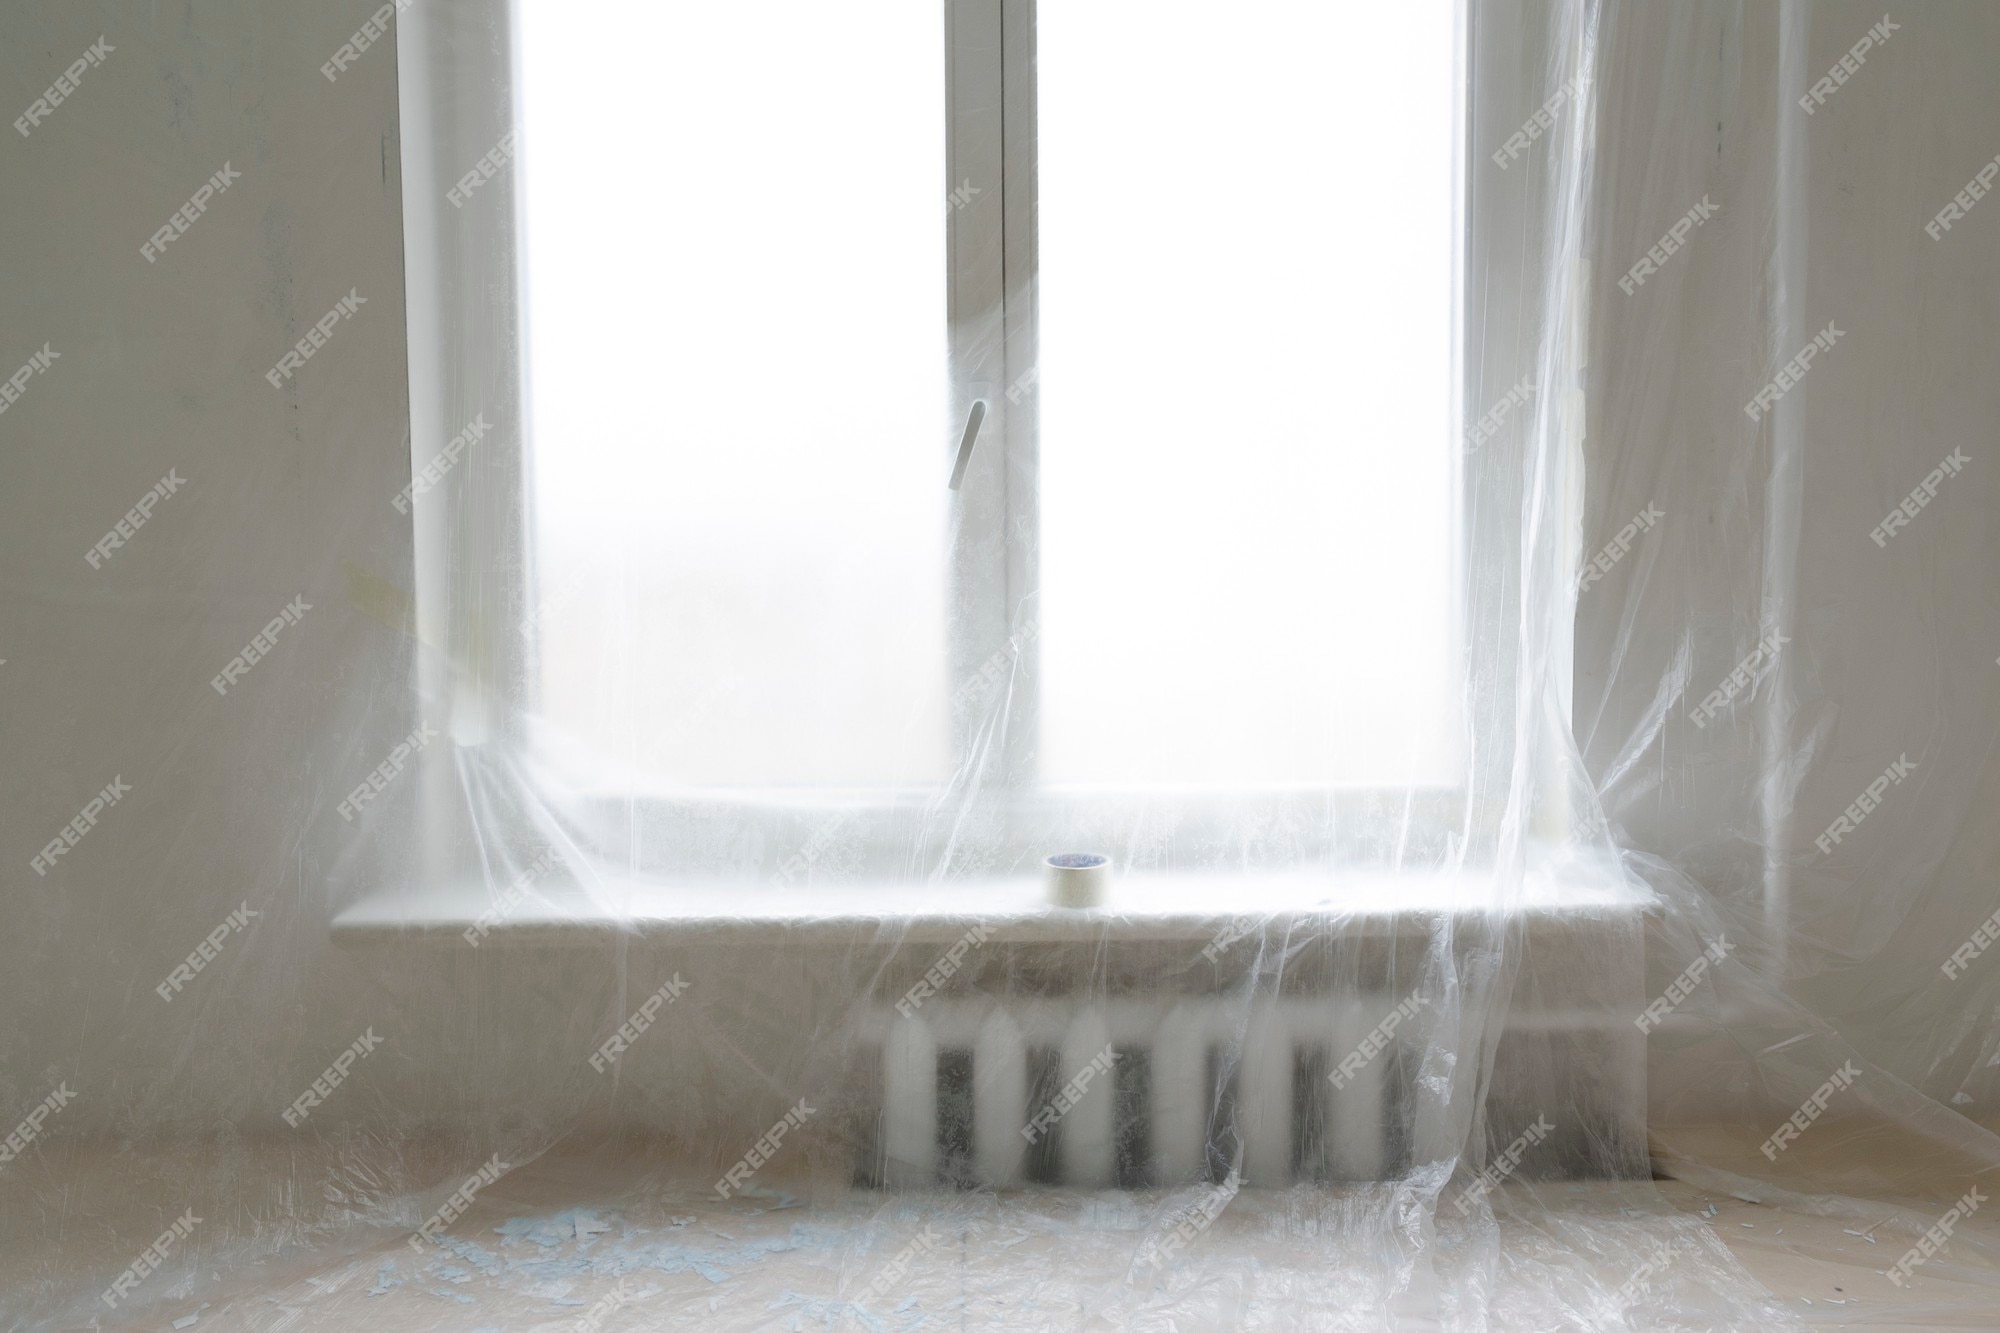 stel je voor Luxe nep Muur en raam beschermd door plastic folie in interieur voor woningrenovatie  | Premium Foto